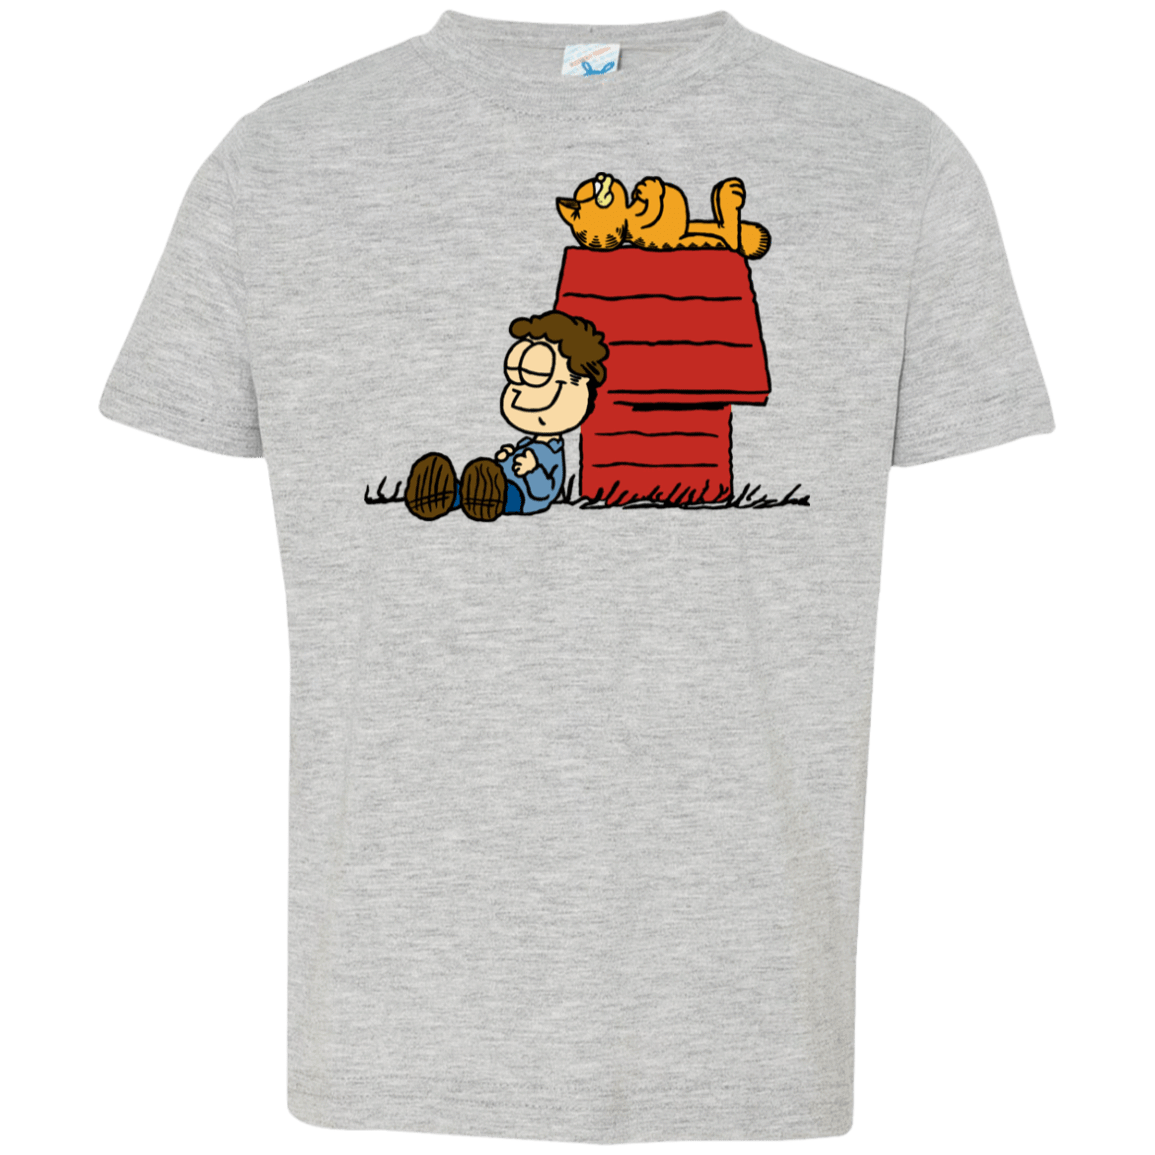 T-Shirts Heather Grey / 2T Jon Brown Toddler Premium T-Shirt